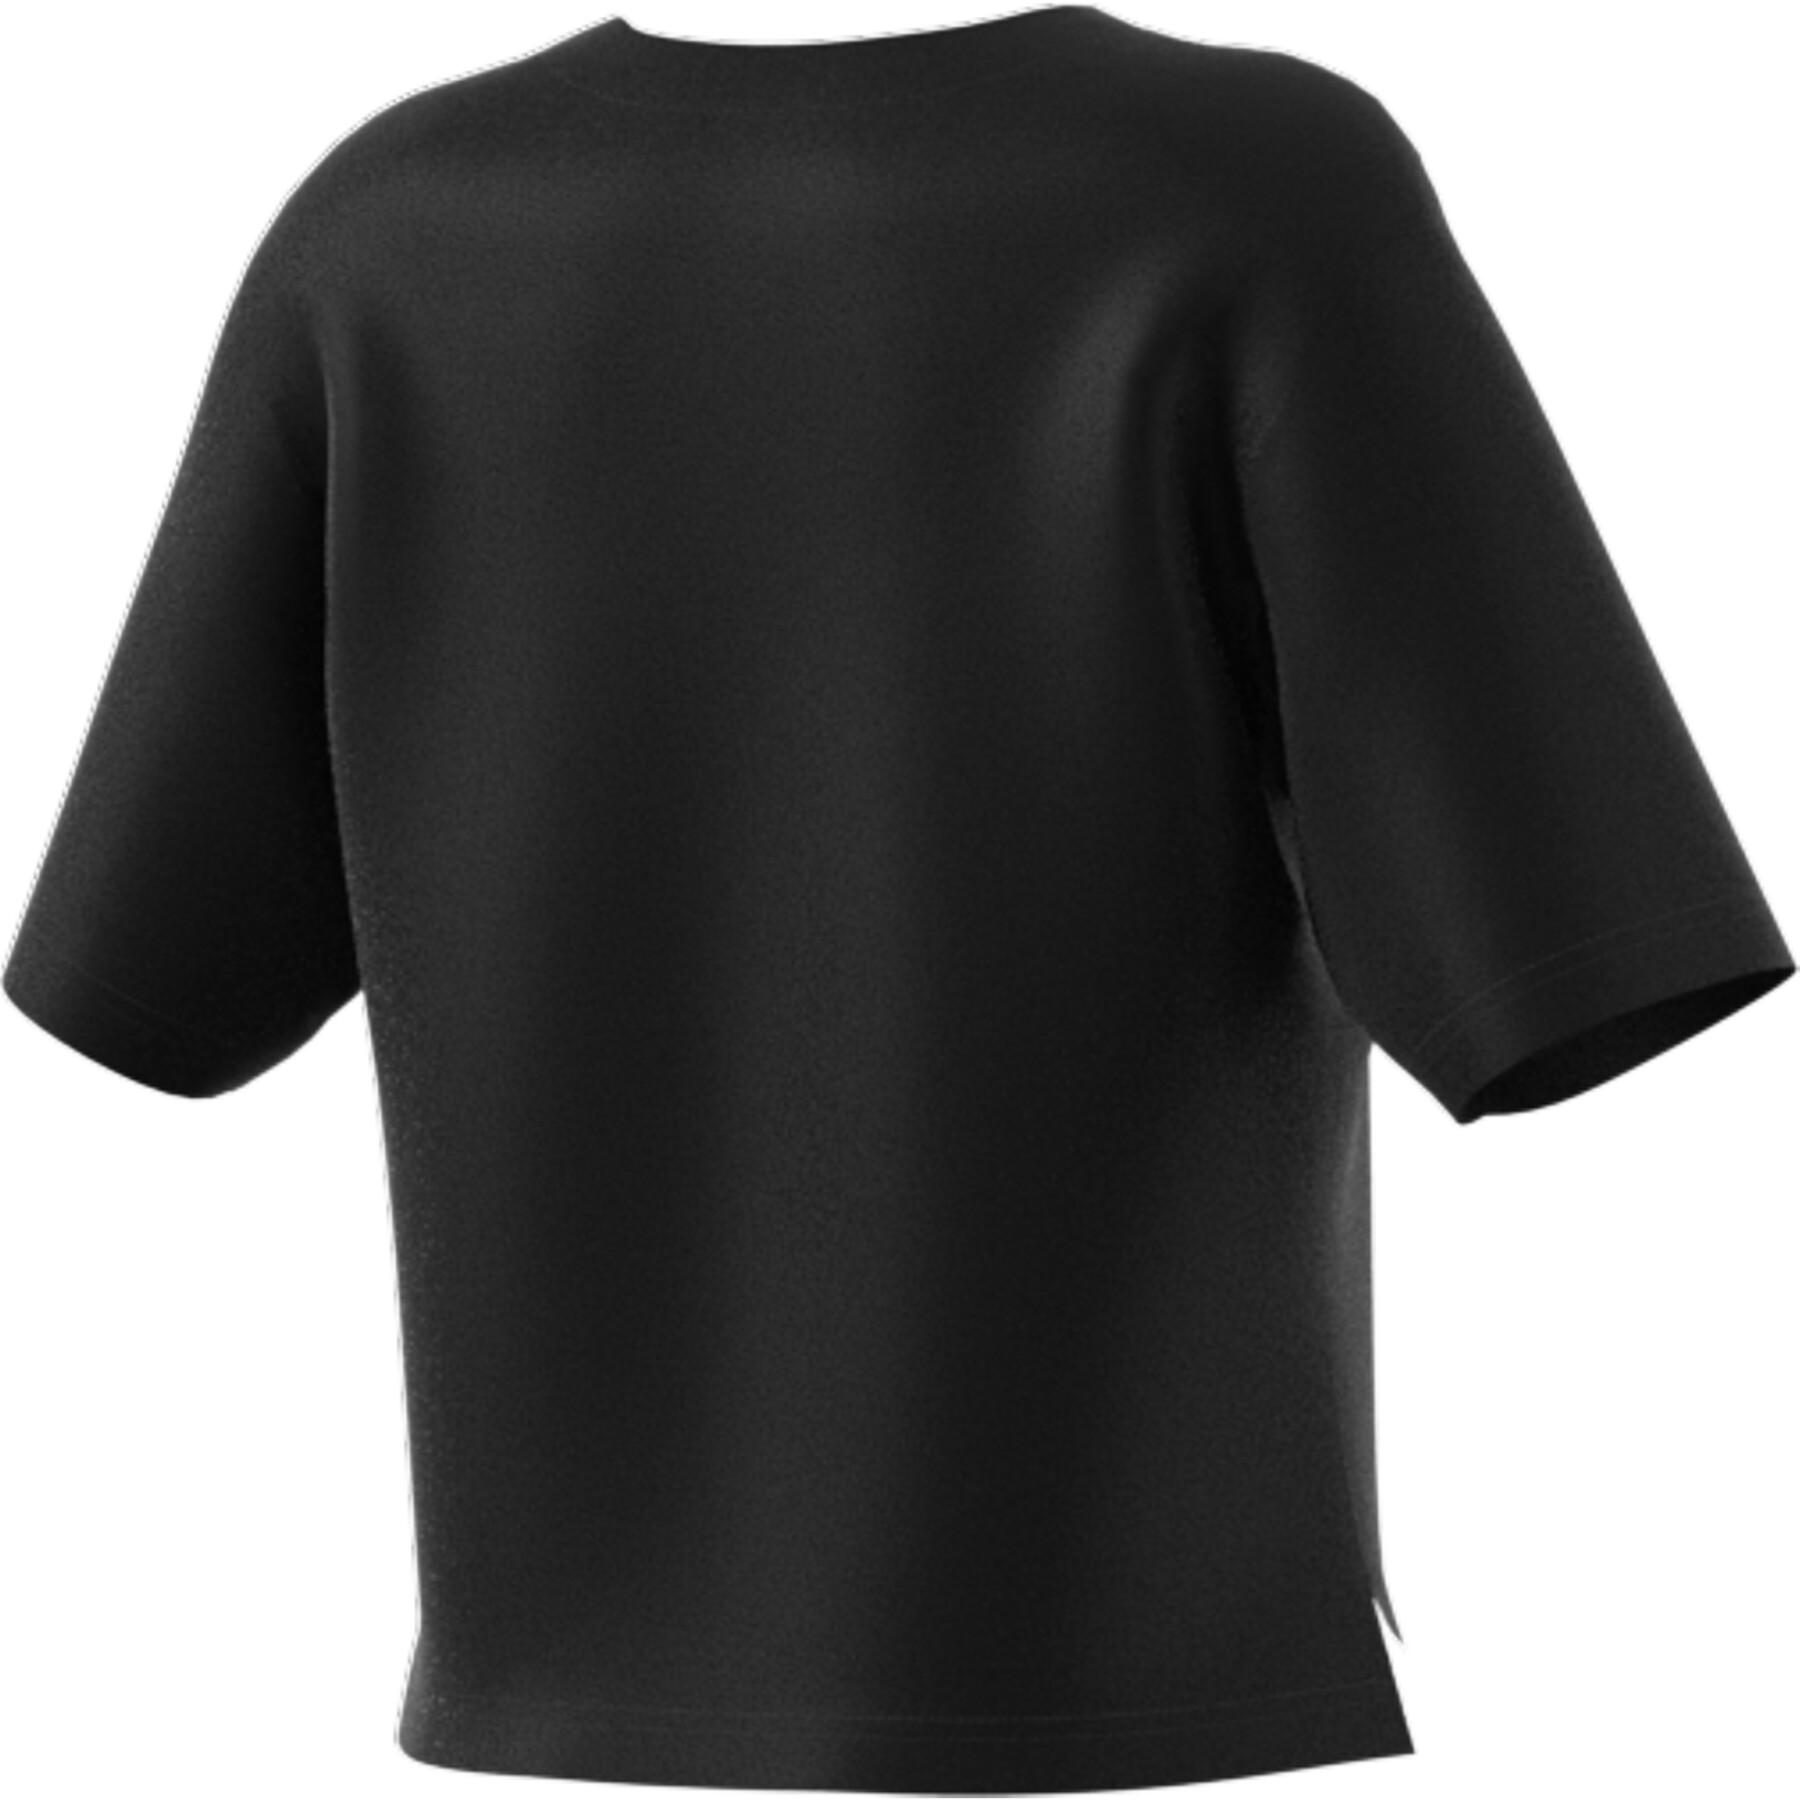 T-shirt för kvinnor adidas Camp Graphic Universal Sleeve